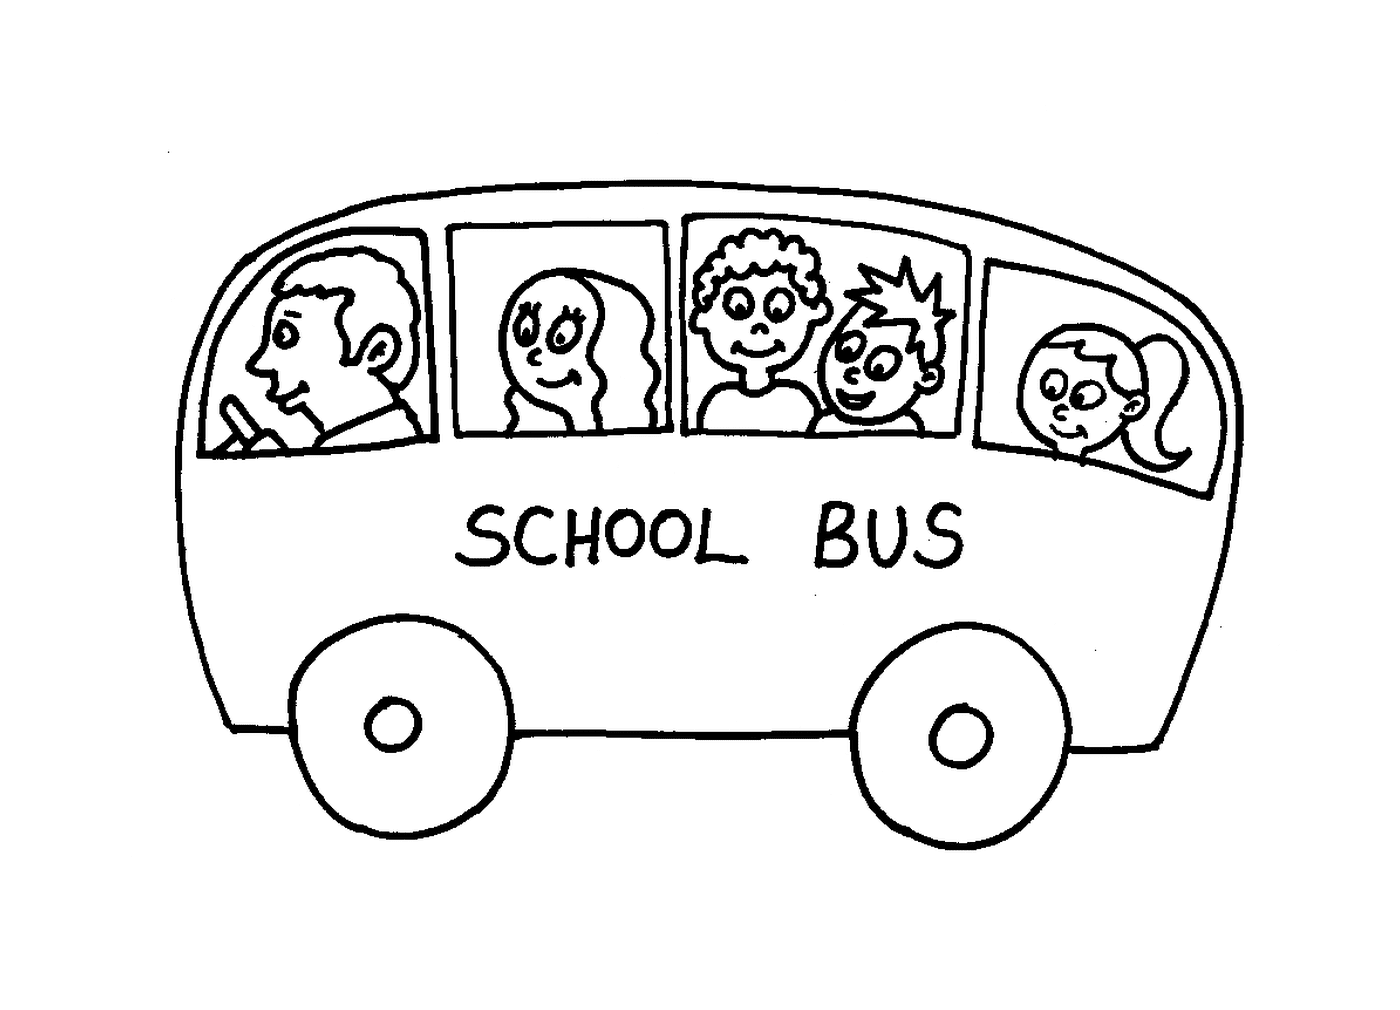  一辆满是孩子的校车 